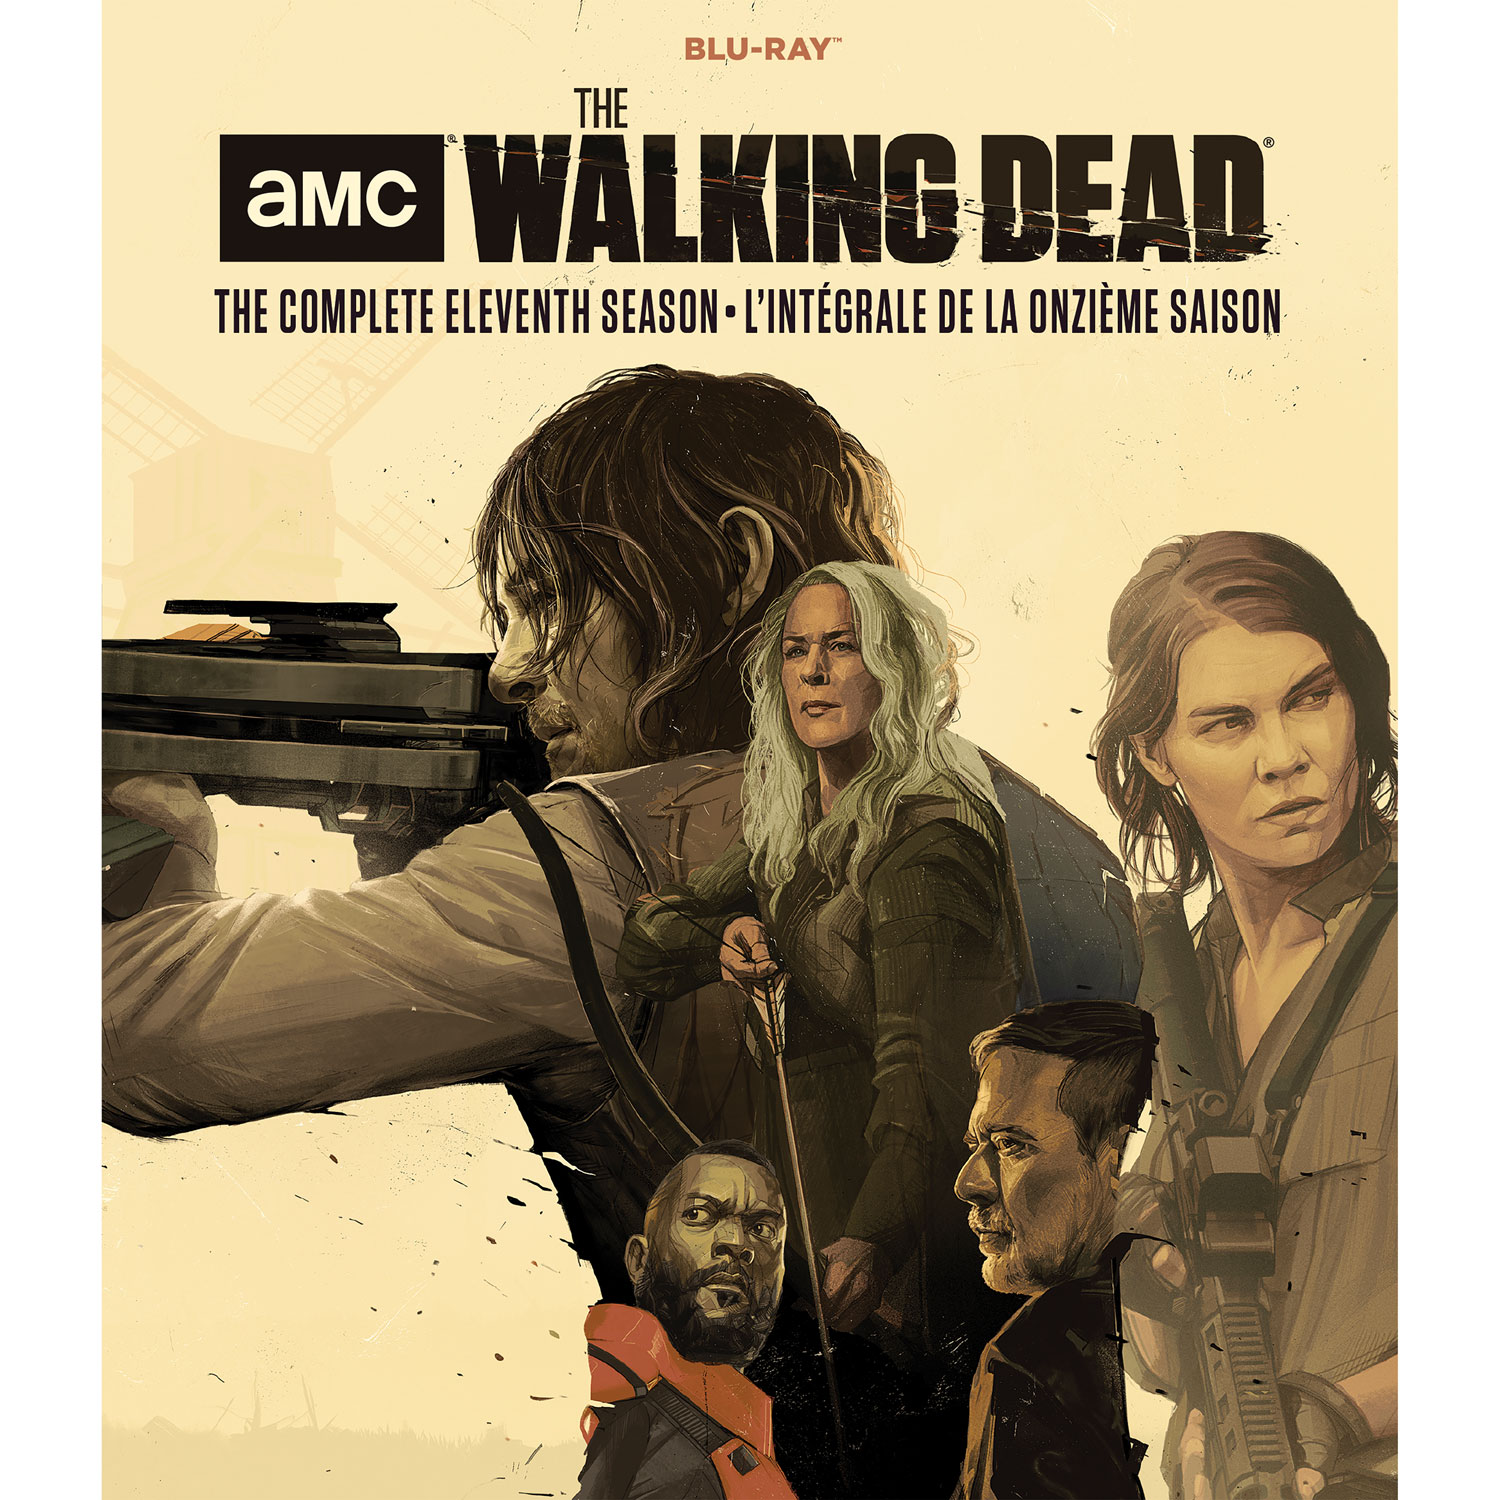 The Walking Dead: Final Season (Blu-ray)